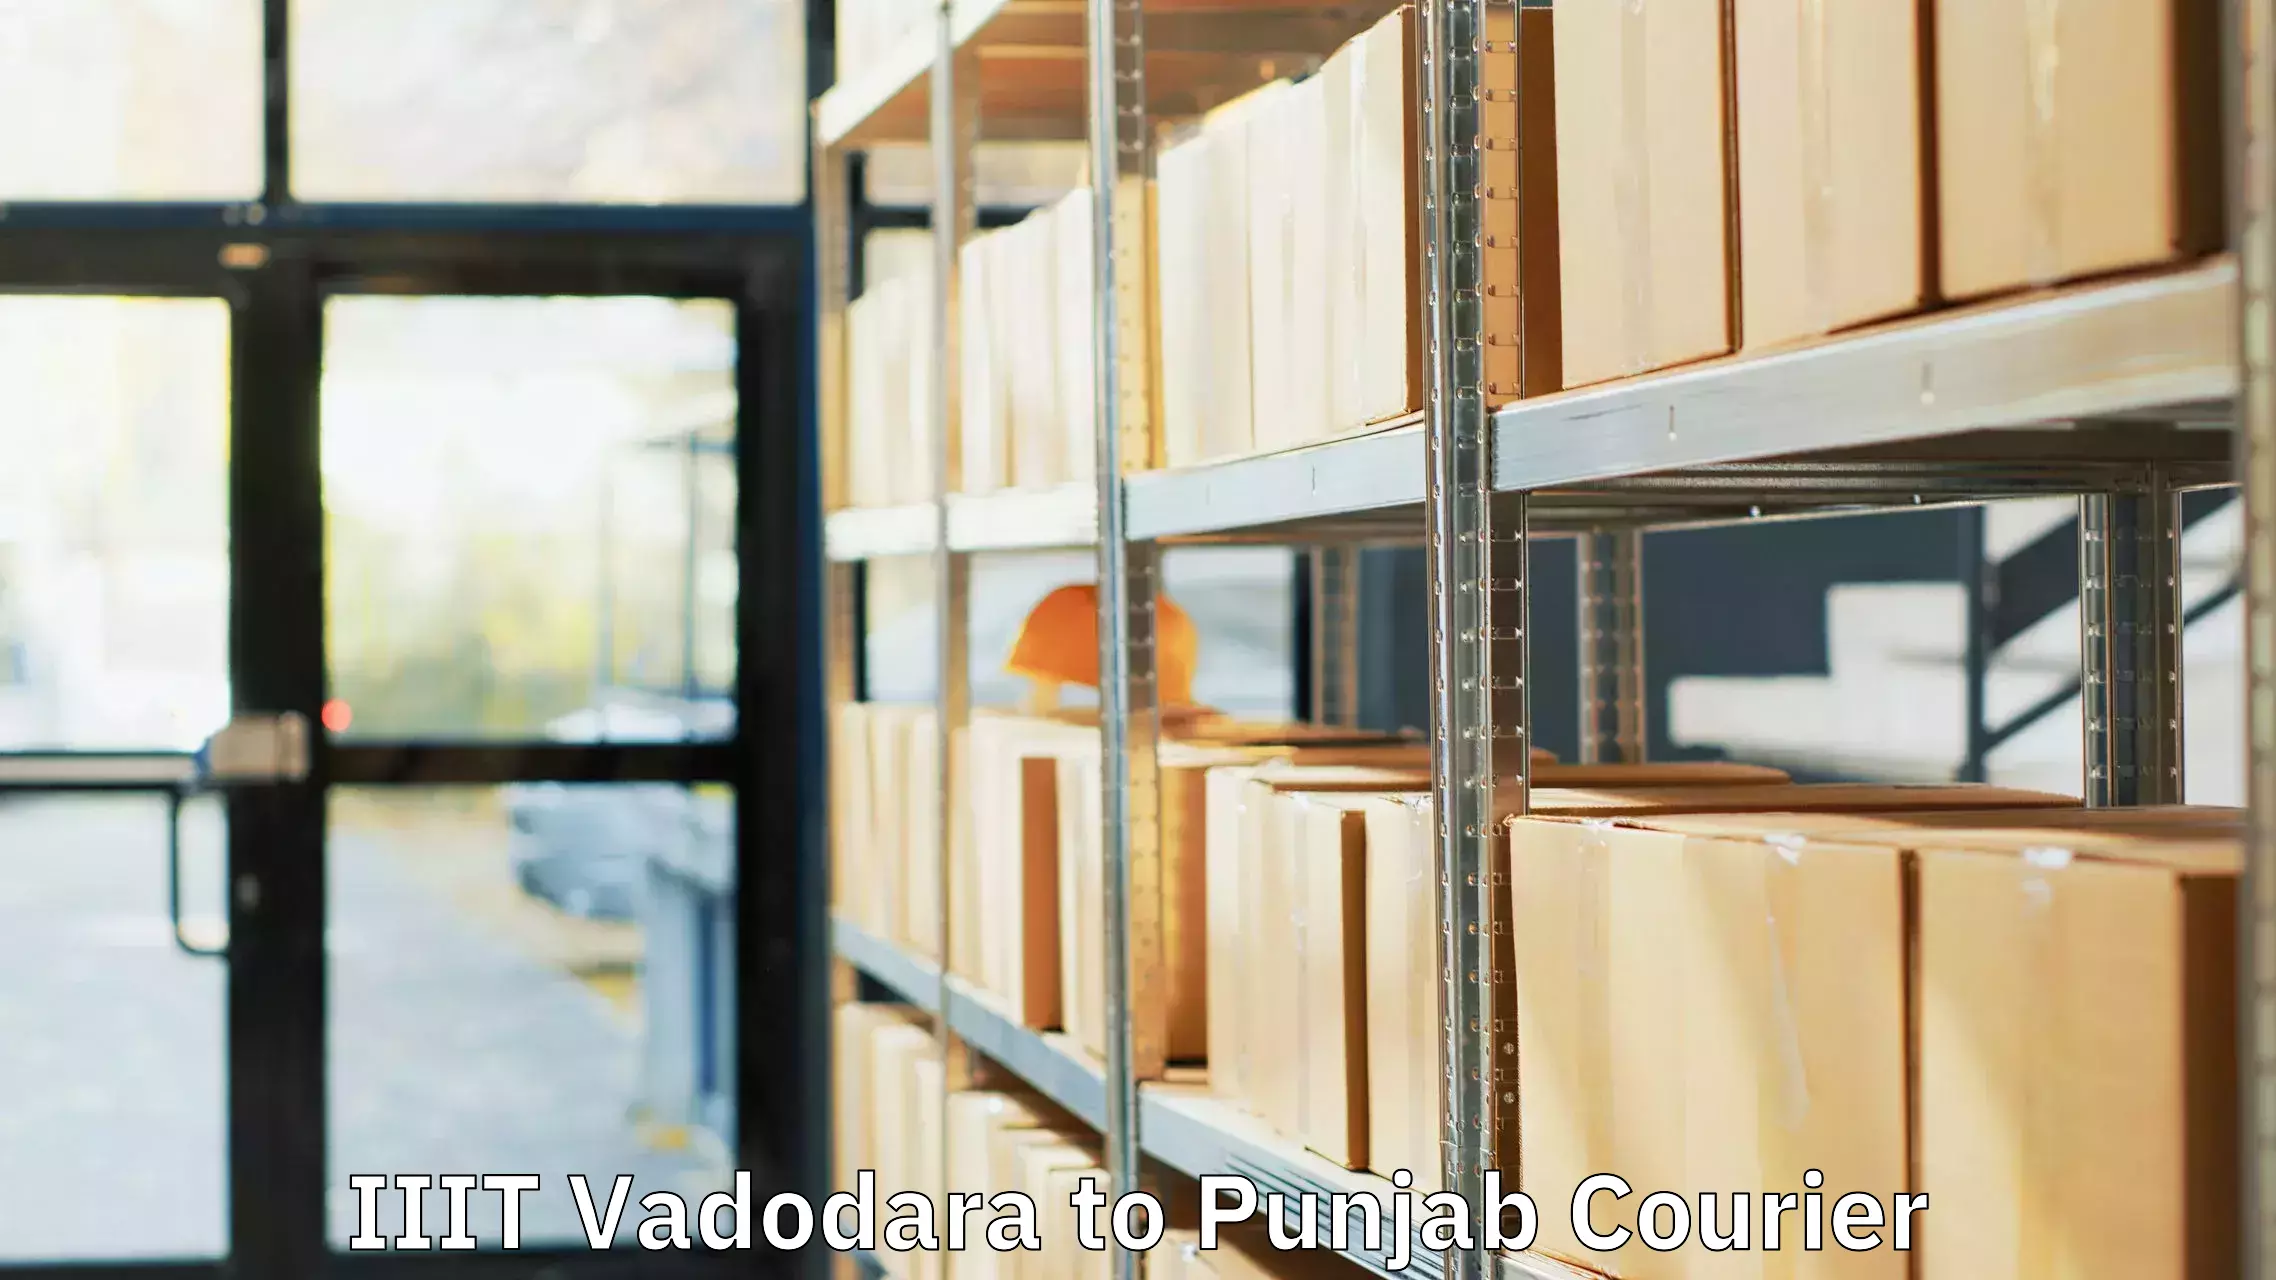 Luggage transport consulting IIIT Vadodara to Punjab